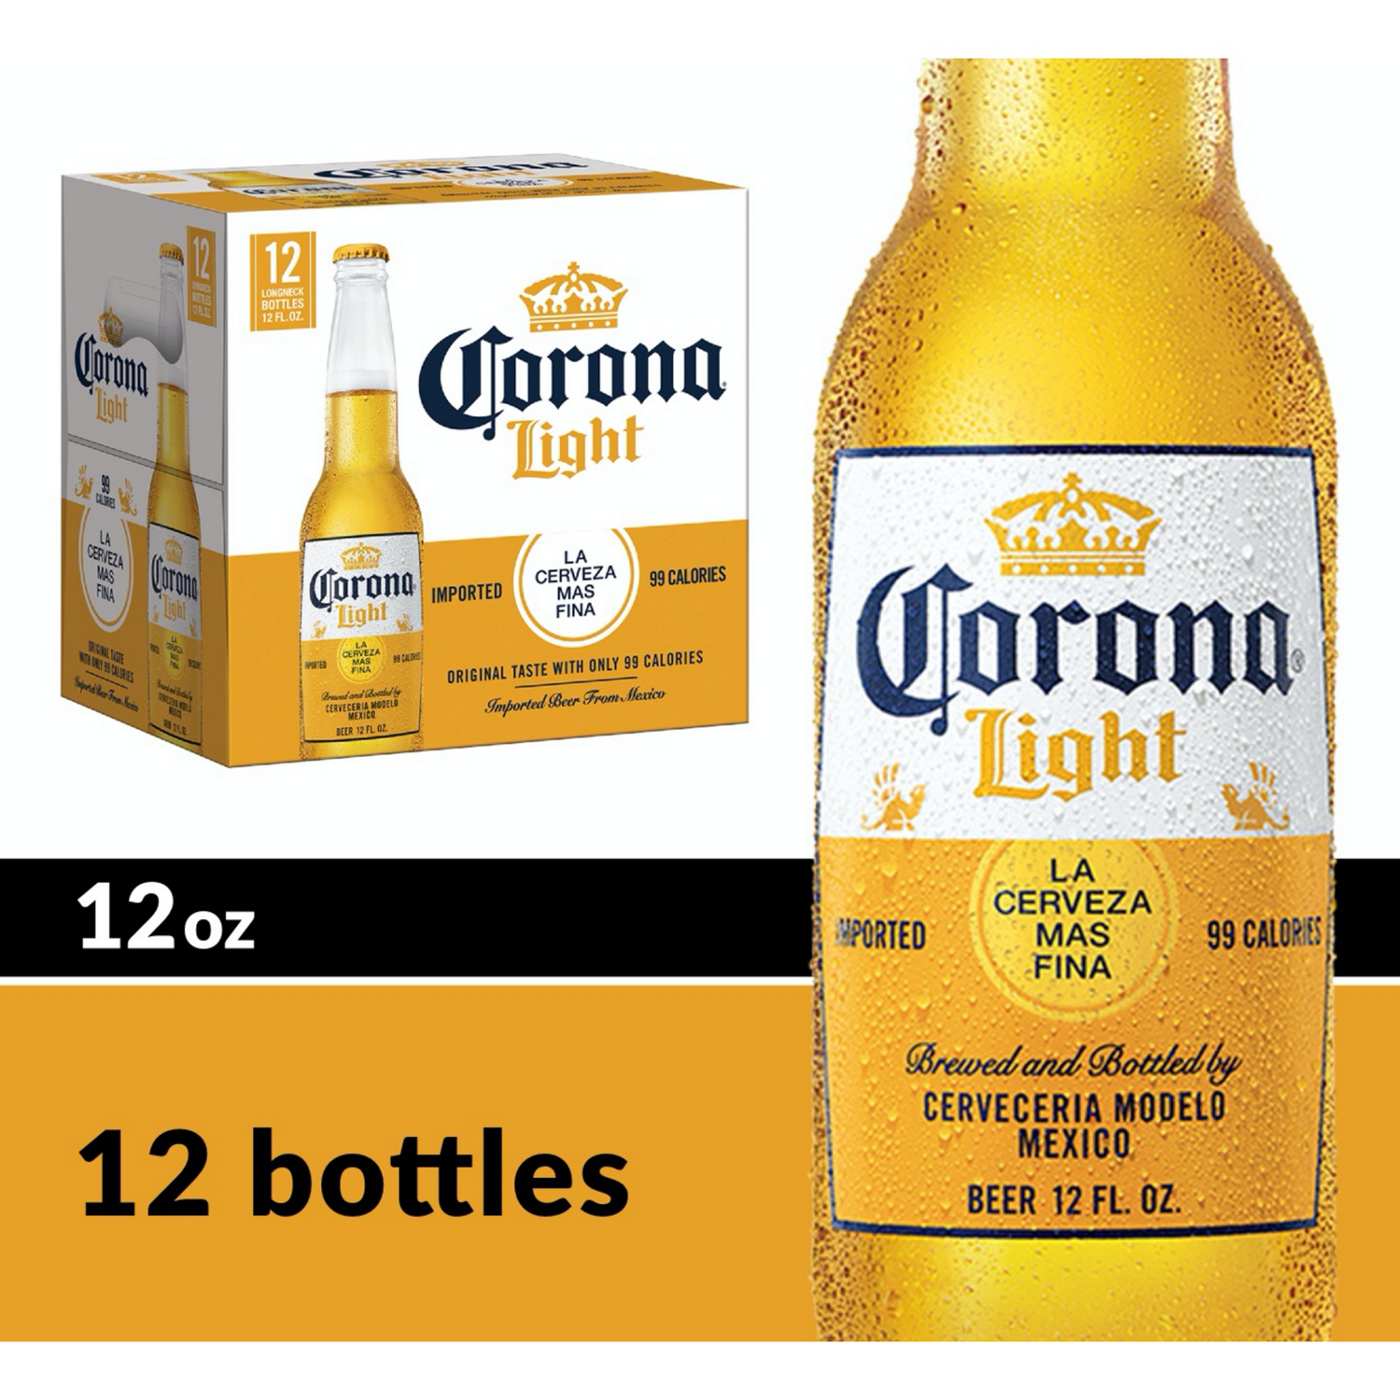 Corona Light Mexican Lager Import Light Beer 12 oz Bottles, 12 pk; image 2 of 10